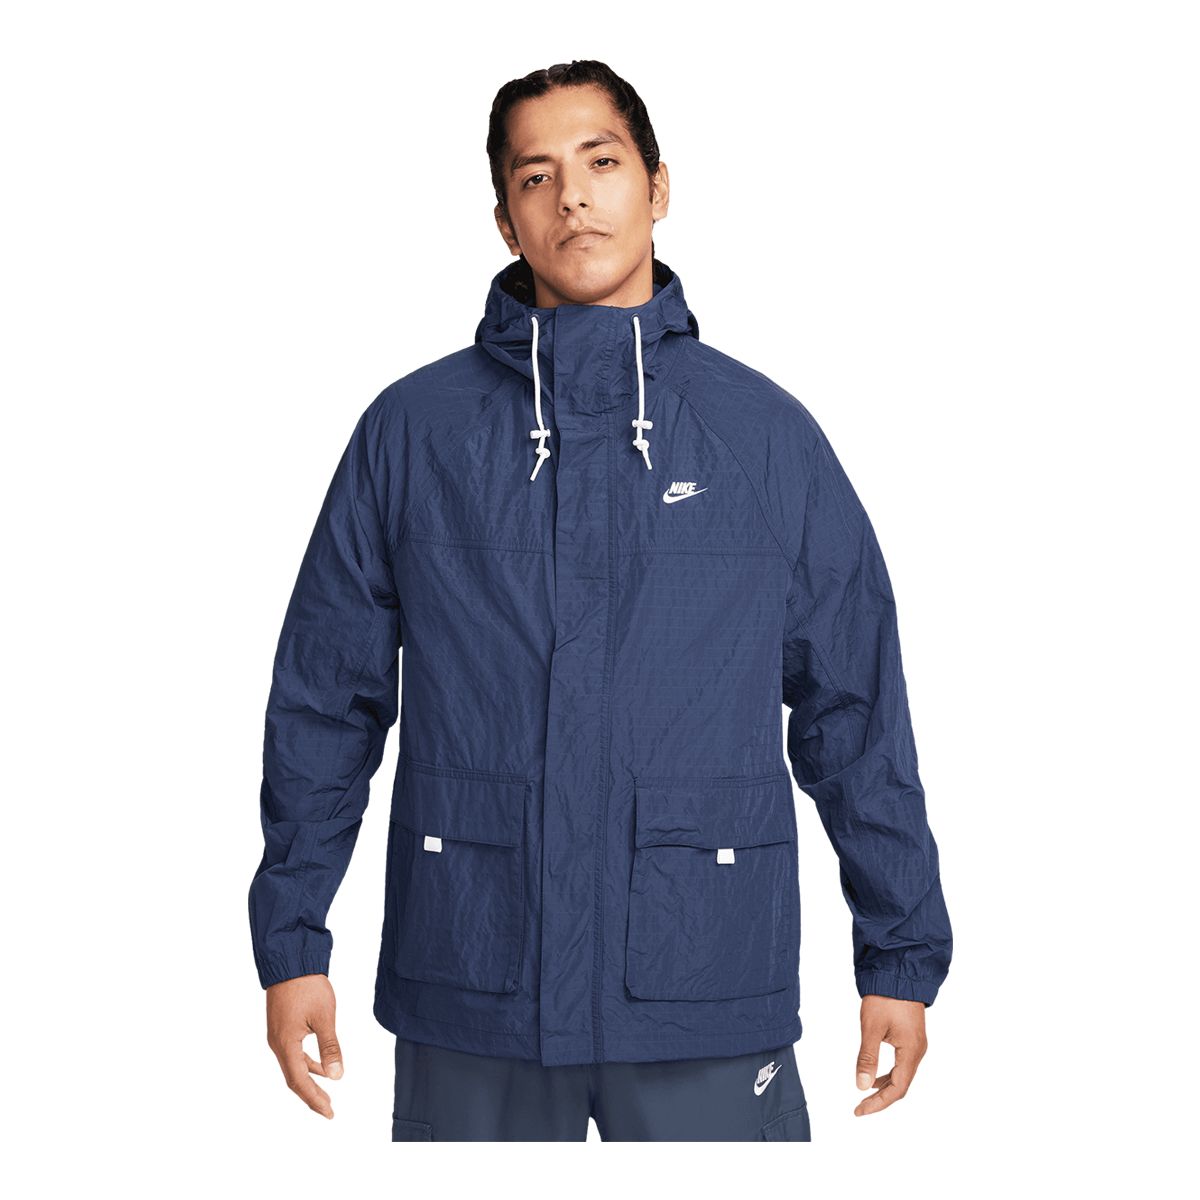 Image of Nike Sportswear Men's Bowline Jacket